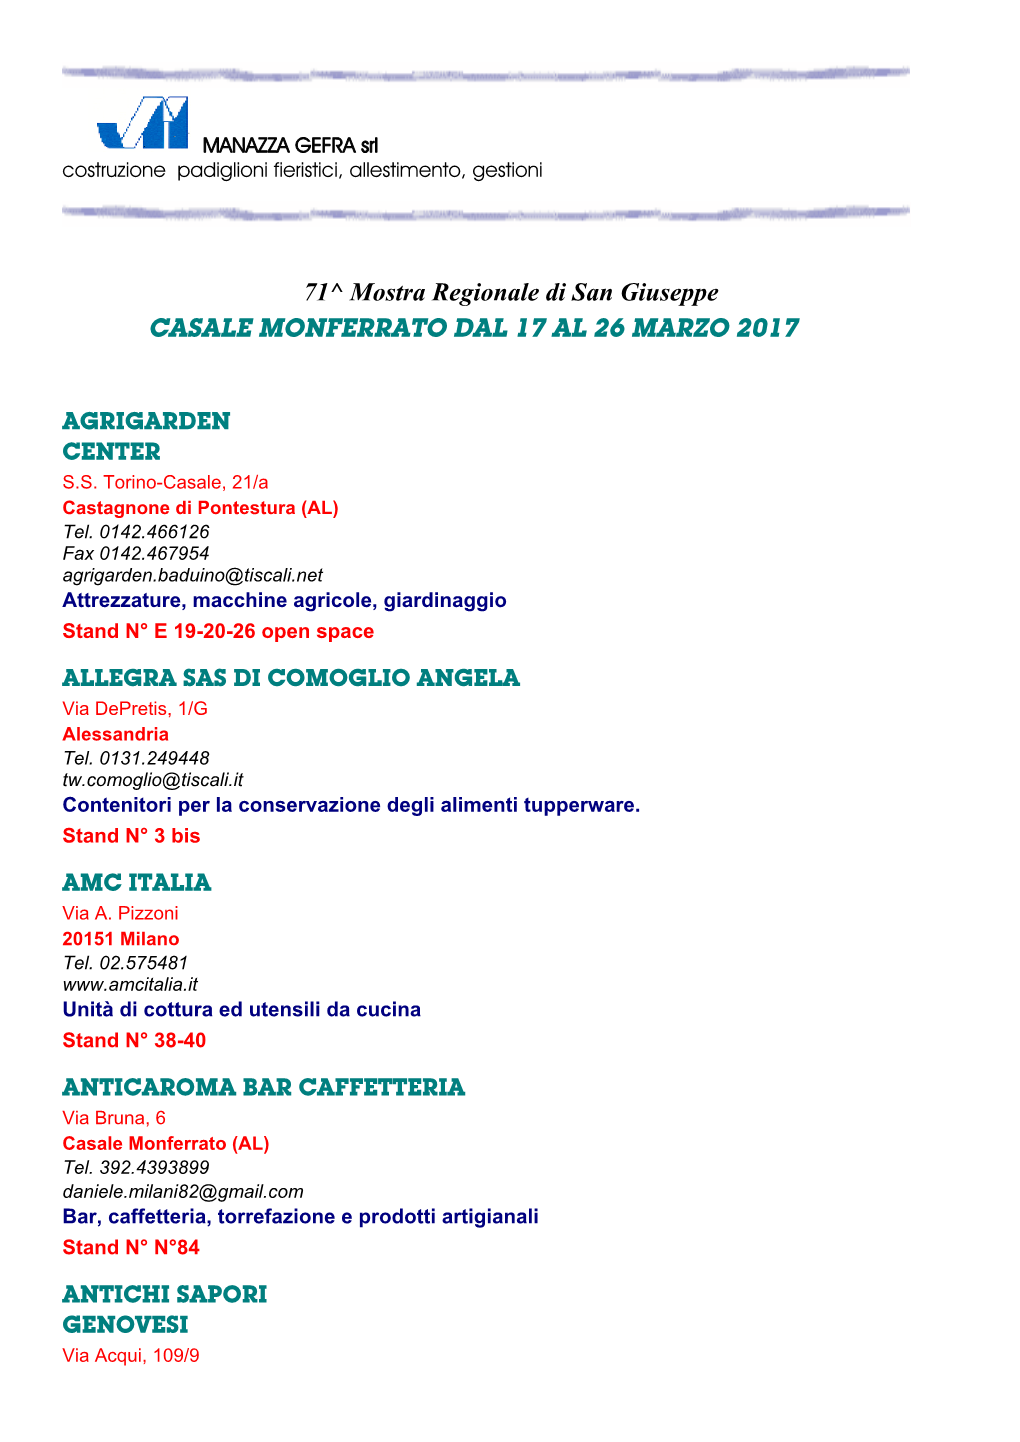 71^ Mostra Regionale Di San Giuseppe CASALE MONFERRATO DAL 17 AL 26 MARZO 2017